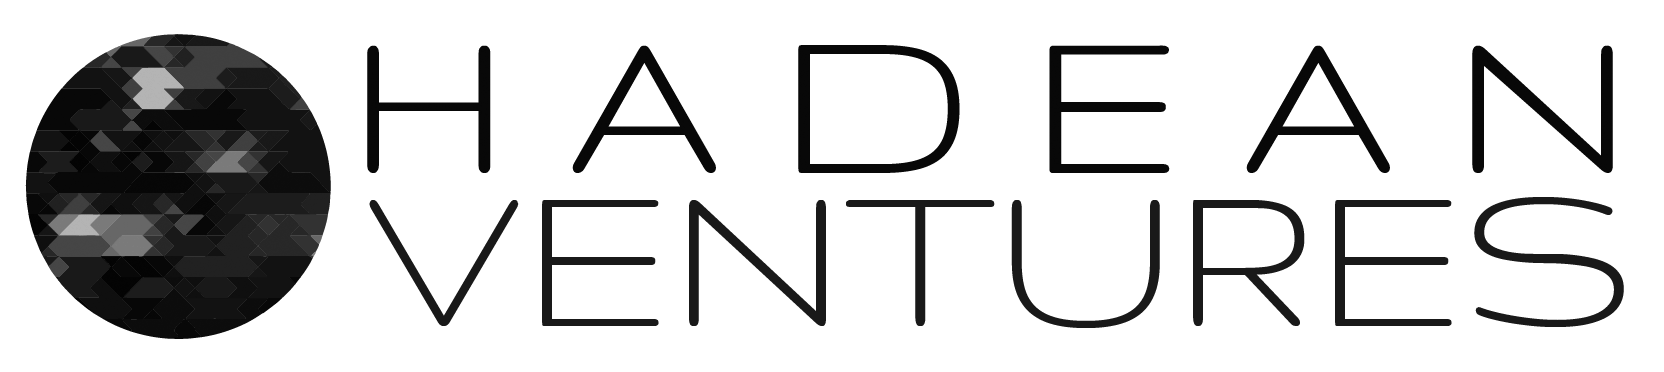 Hadean Logo 